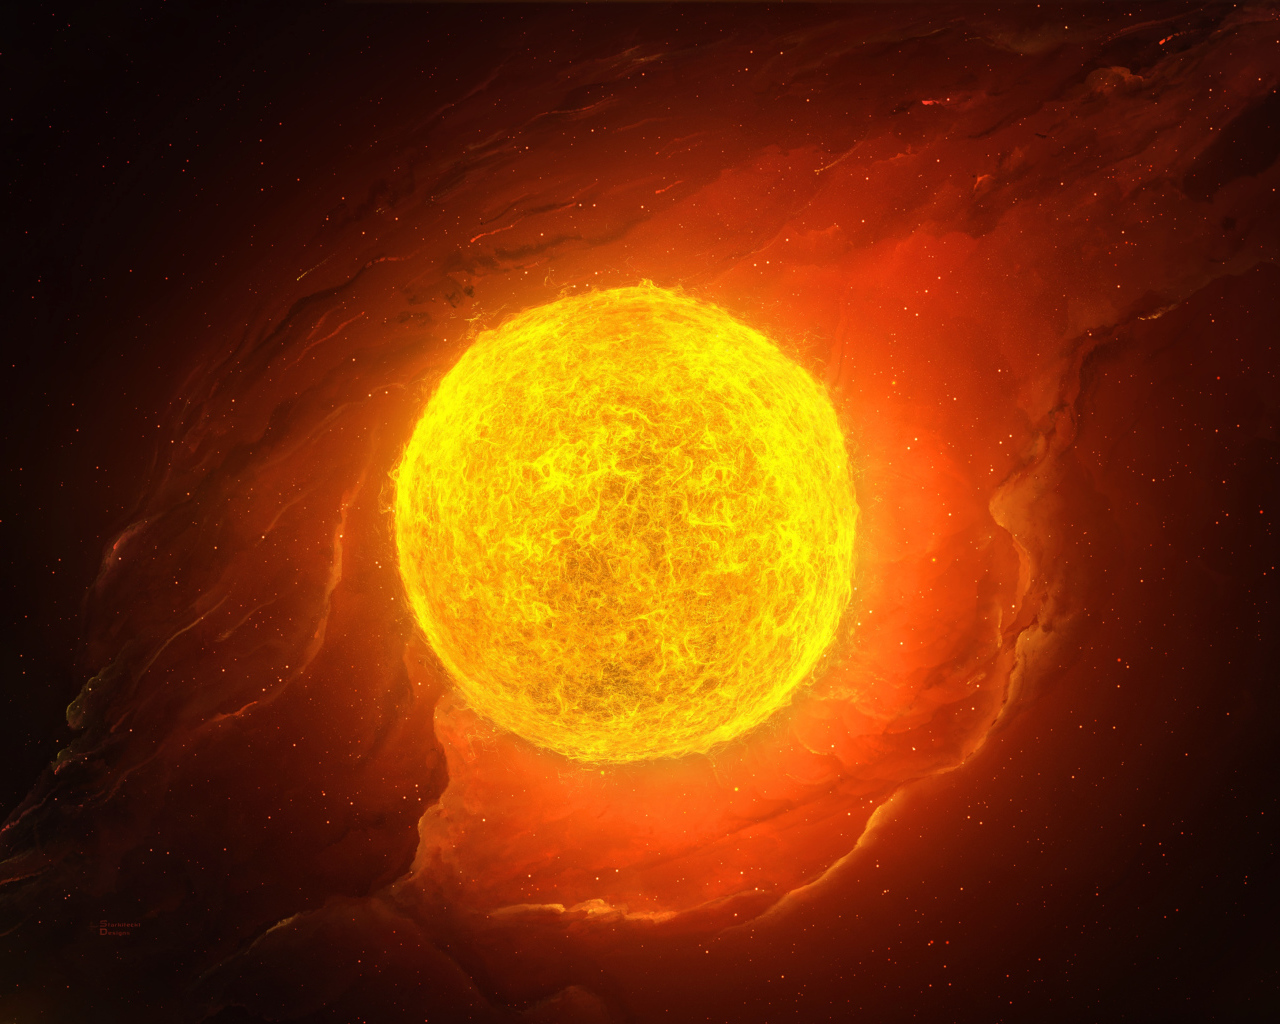 Bright fiery sun in space